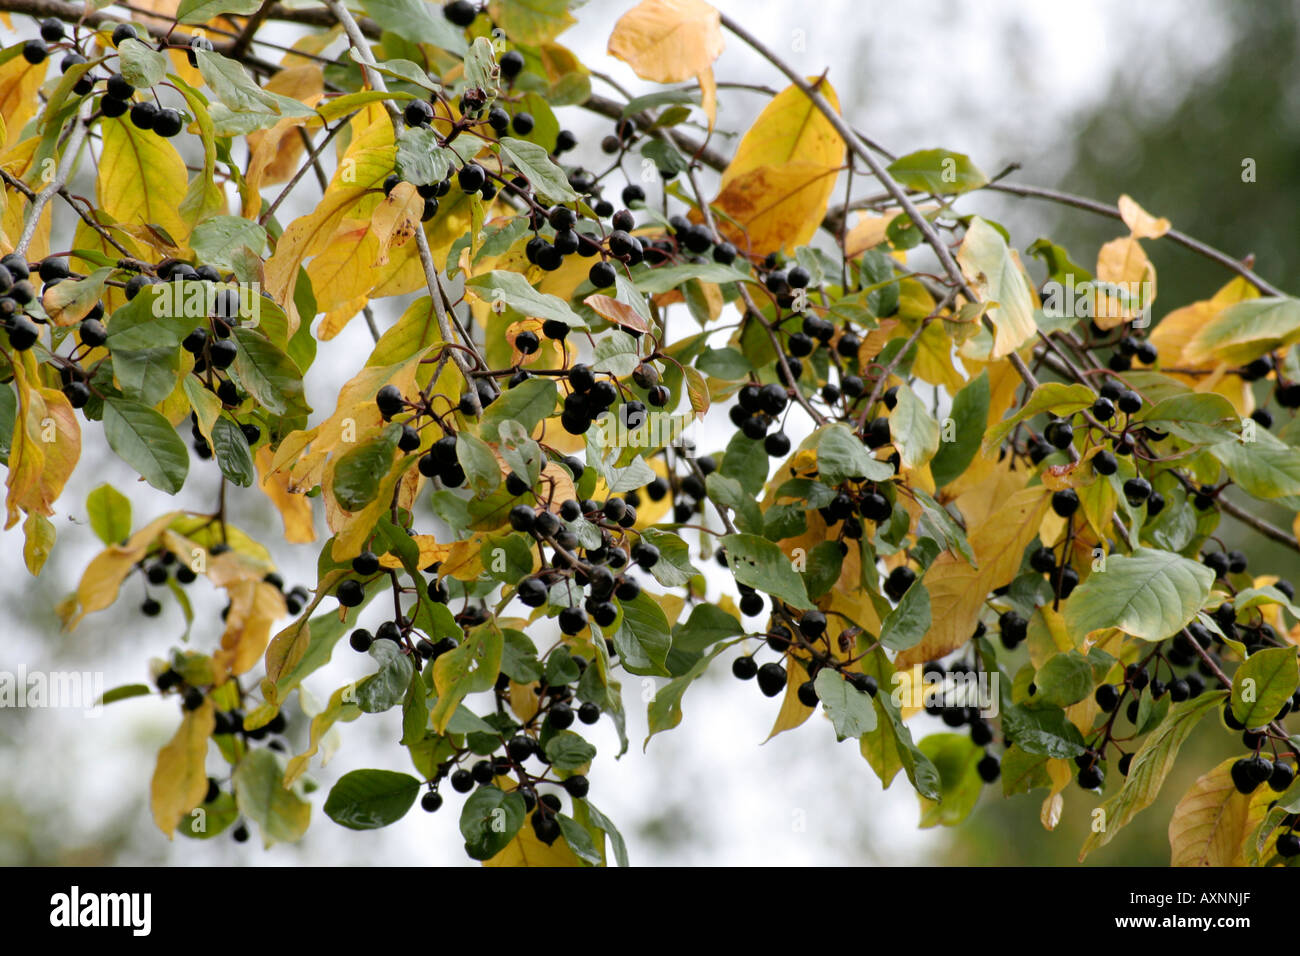 Frangula alnus Alder Buckthorn fruits in October Stock Photo